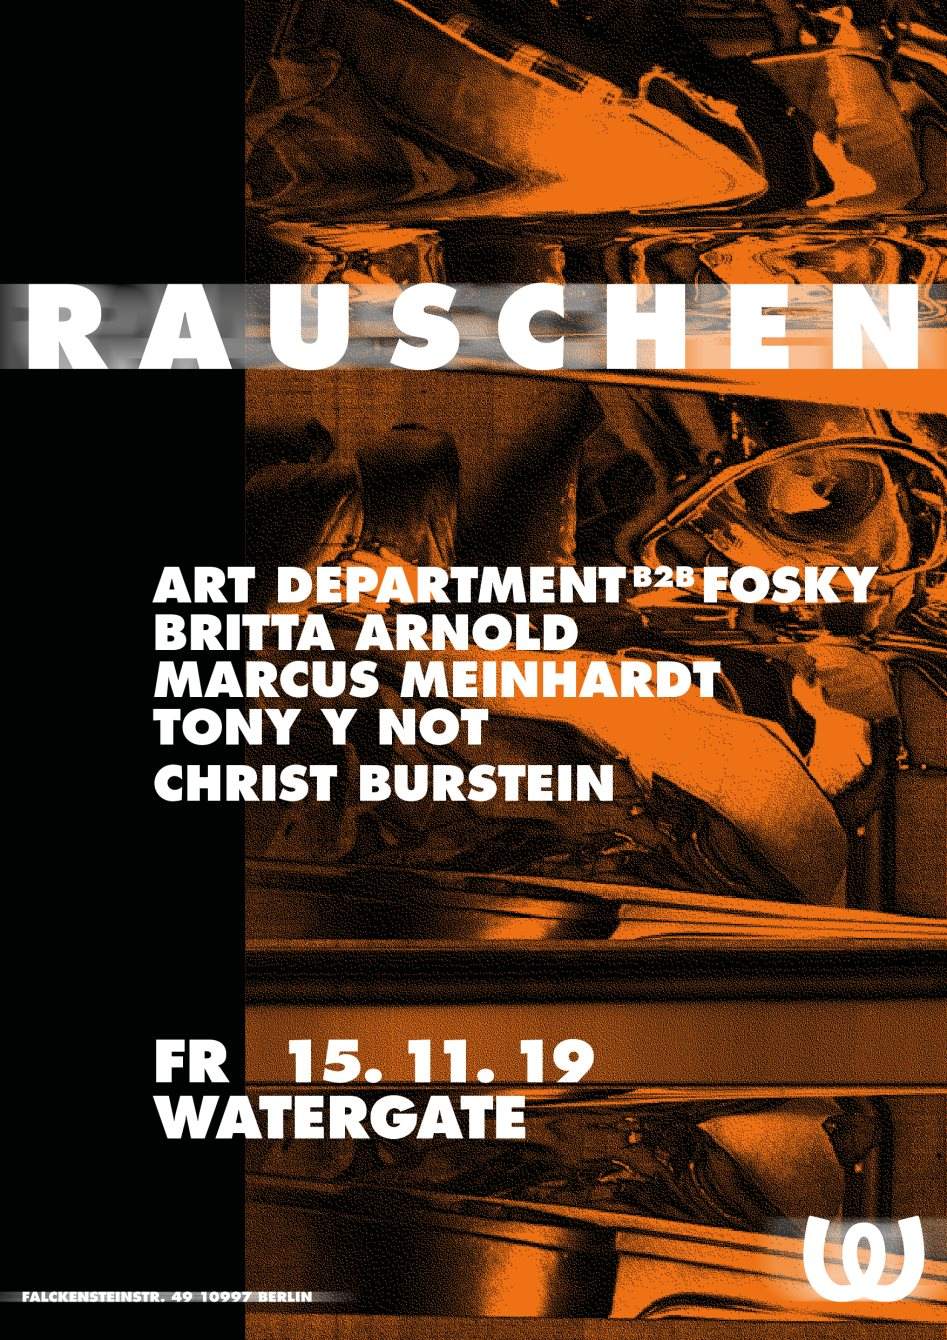 Rauschen with Art Department B2B Fosky, Britta Arnold, Marcus Meinhardt, Tony Y Not - フライヤー表